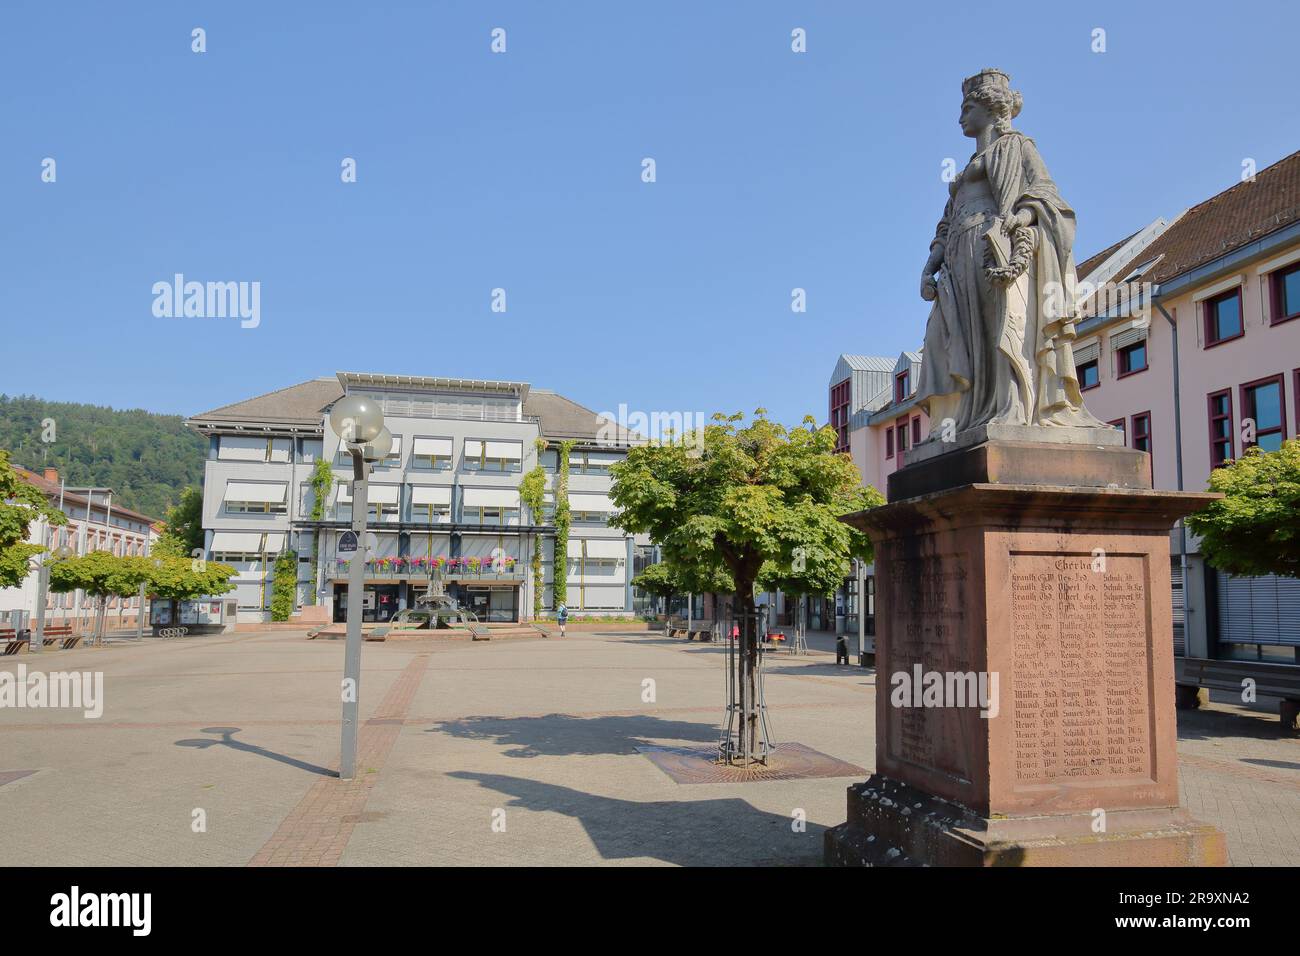 Rathaus am Leopoldsplatz und Statue vom Kriegsdenkmal, Eberbach, Neckar-Tal, Baden-Württemberg, Deutschland Stockfoto